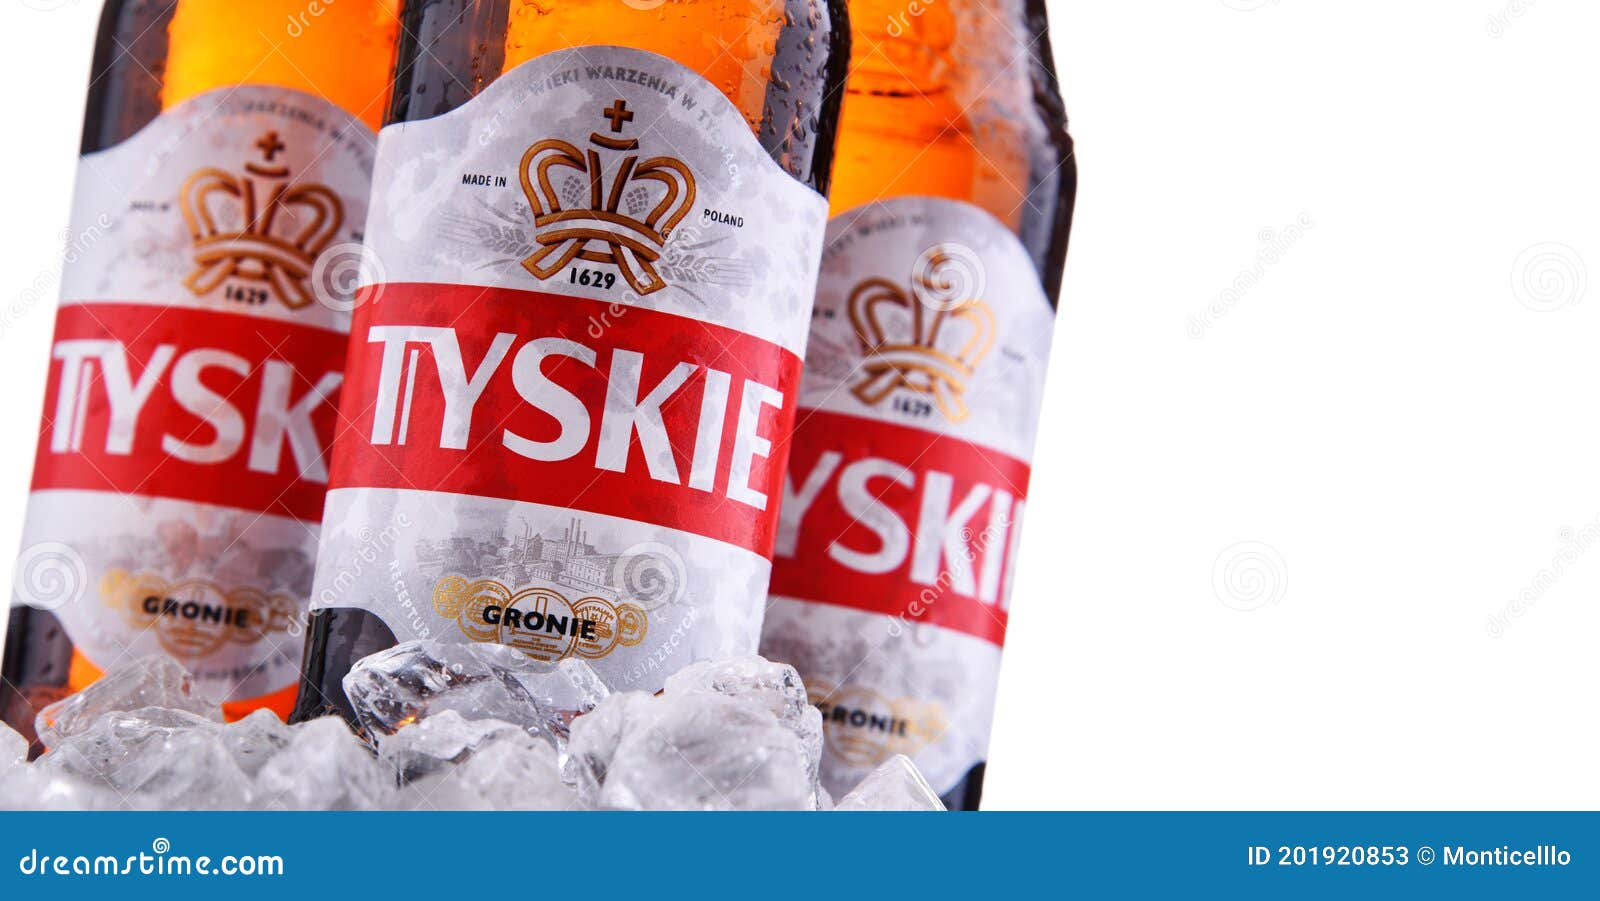 Beer Coaster Kompania Piwowarska Tyskie Gronie Pale Lager Bier; Poznan Poland 